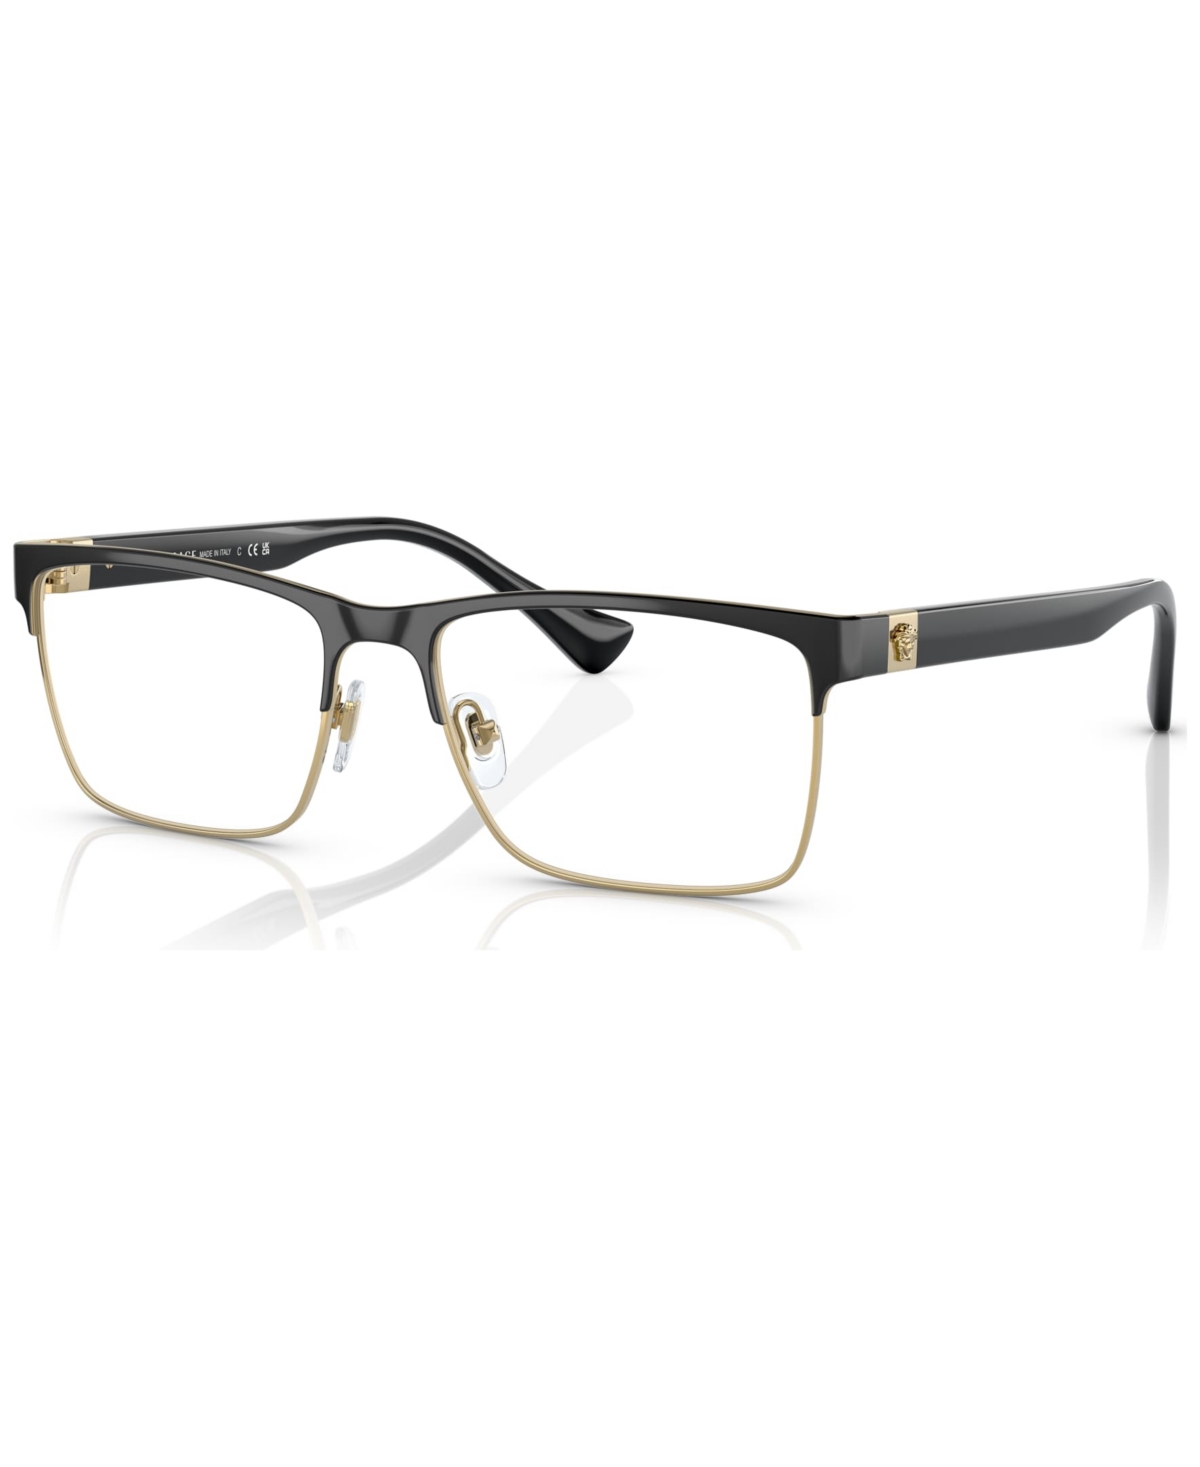 Men's Eyeglasses, VE1285 - Black